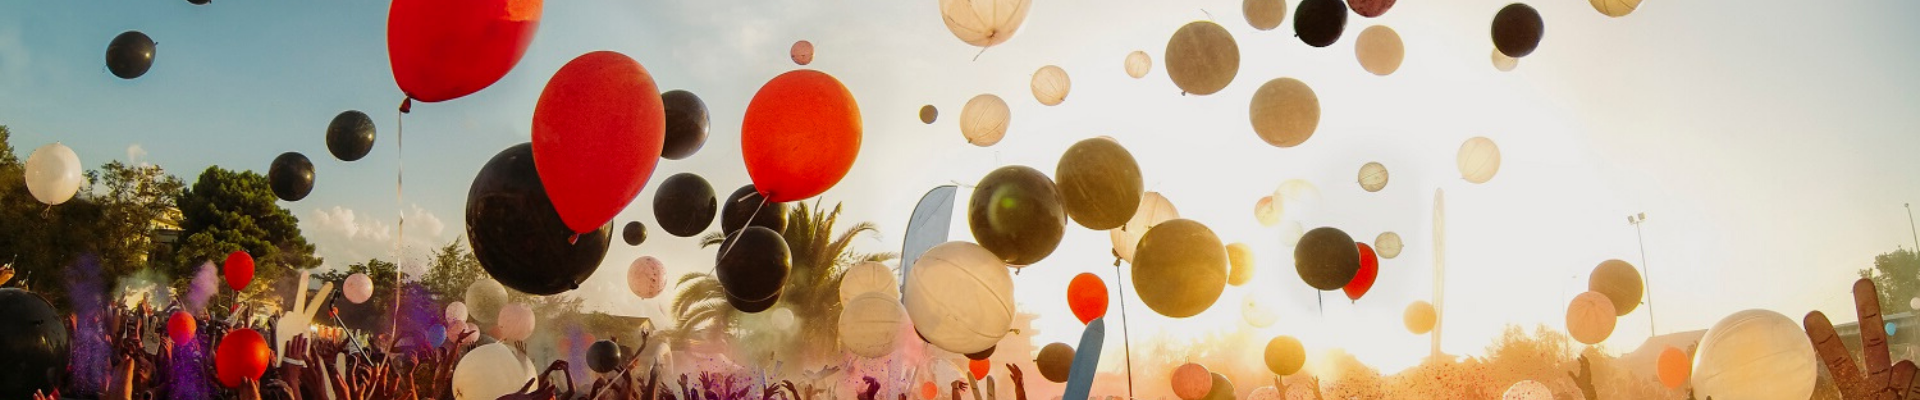 Menschenmenge feiert und lässt bunte Luftballons in den Himmel aufsteigen